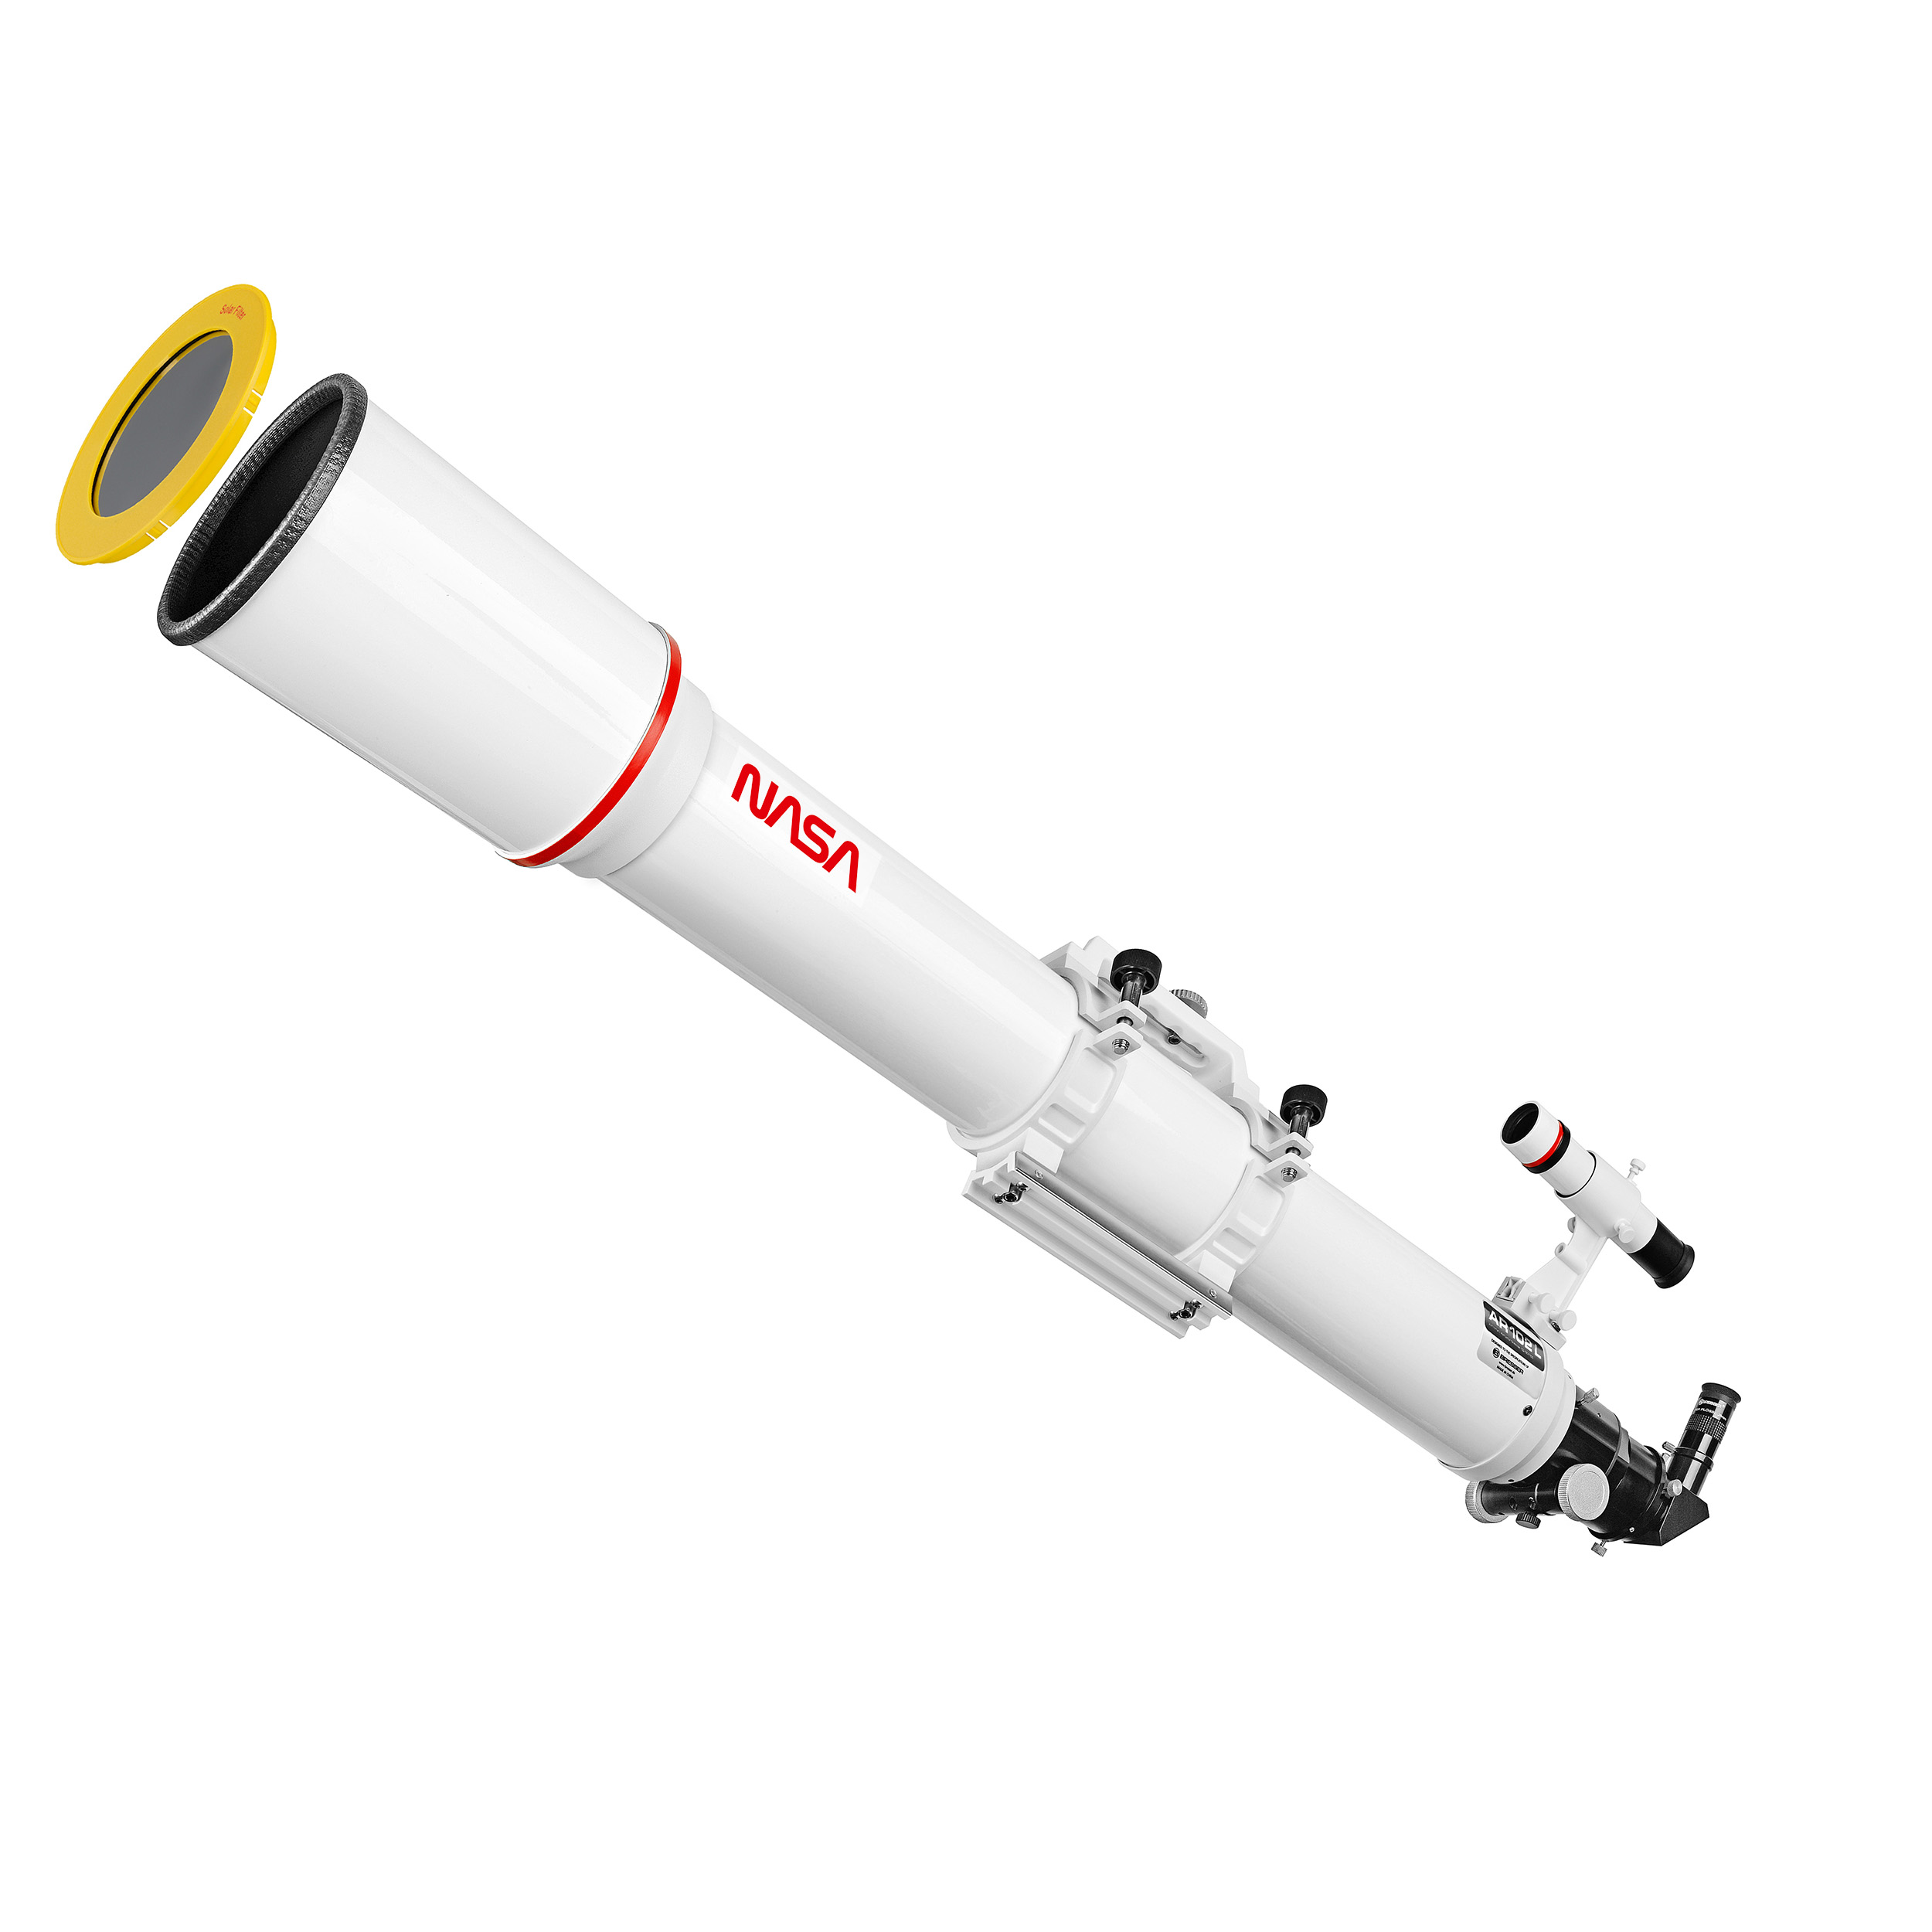 ISA Space Exploration NASA-themed Telescope AR-102L/1350 EXOS-1/EQ4